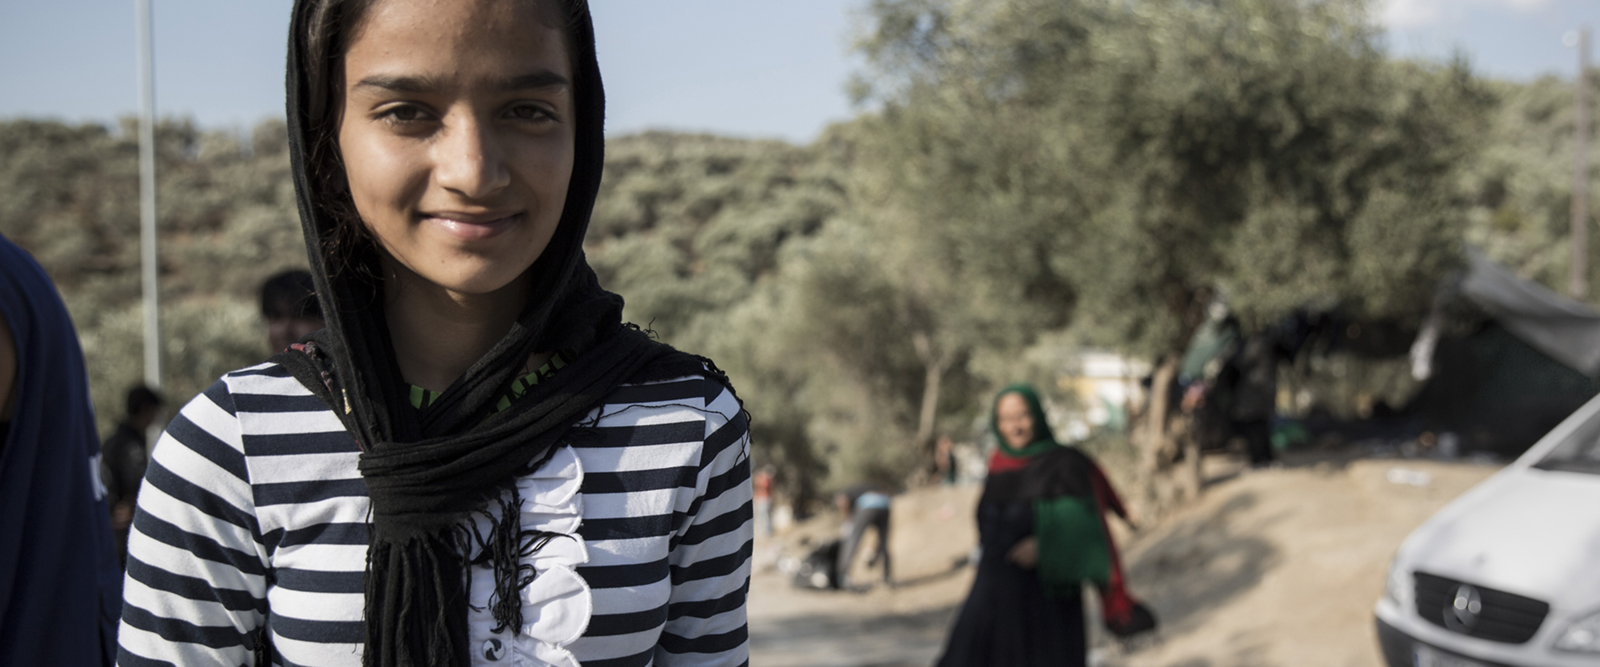 Jonge Syrische vluchtelinge op Lesbos, Griekenland. | Foto: Francesco Malavolta | IOM, 2015